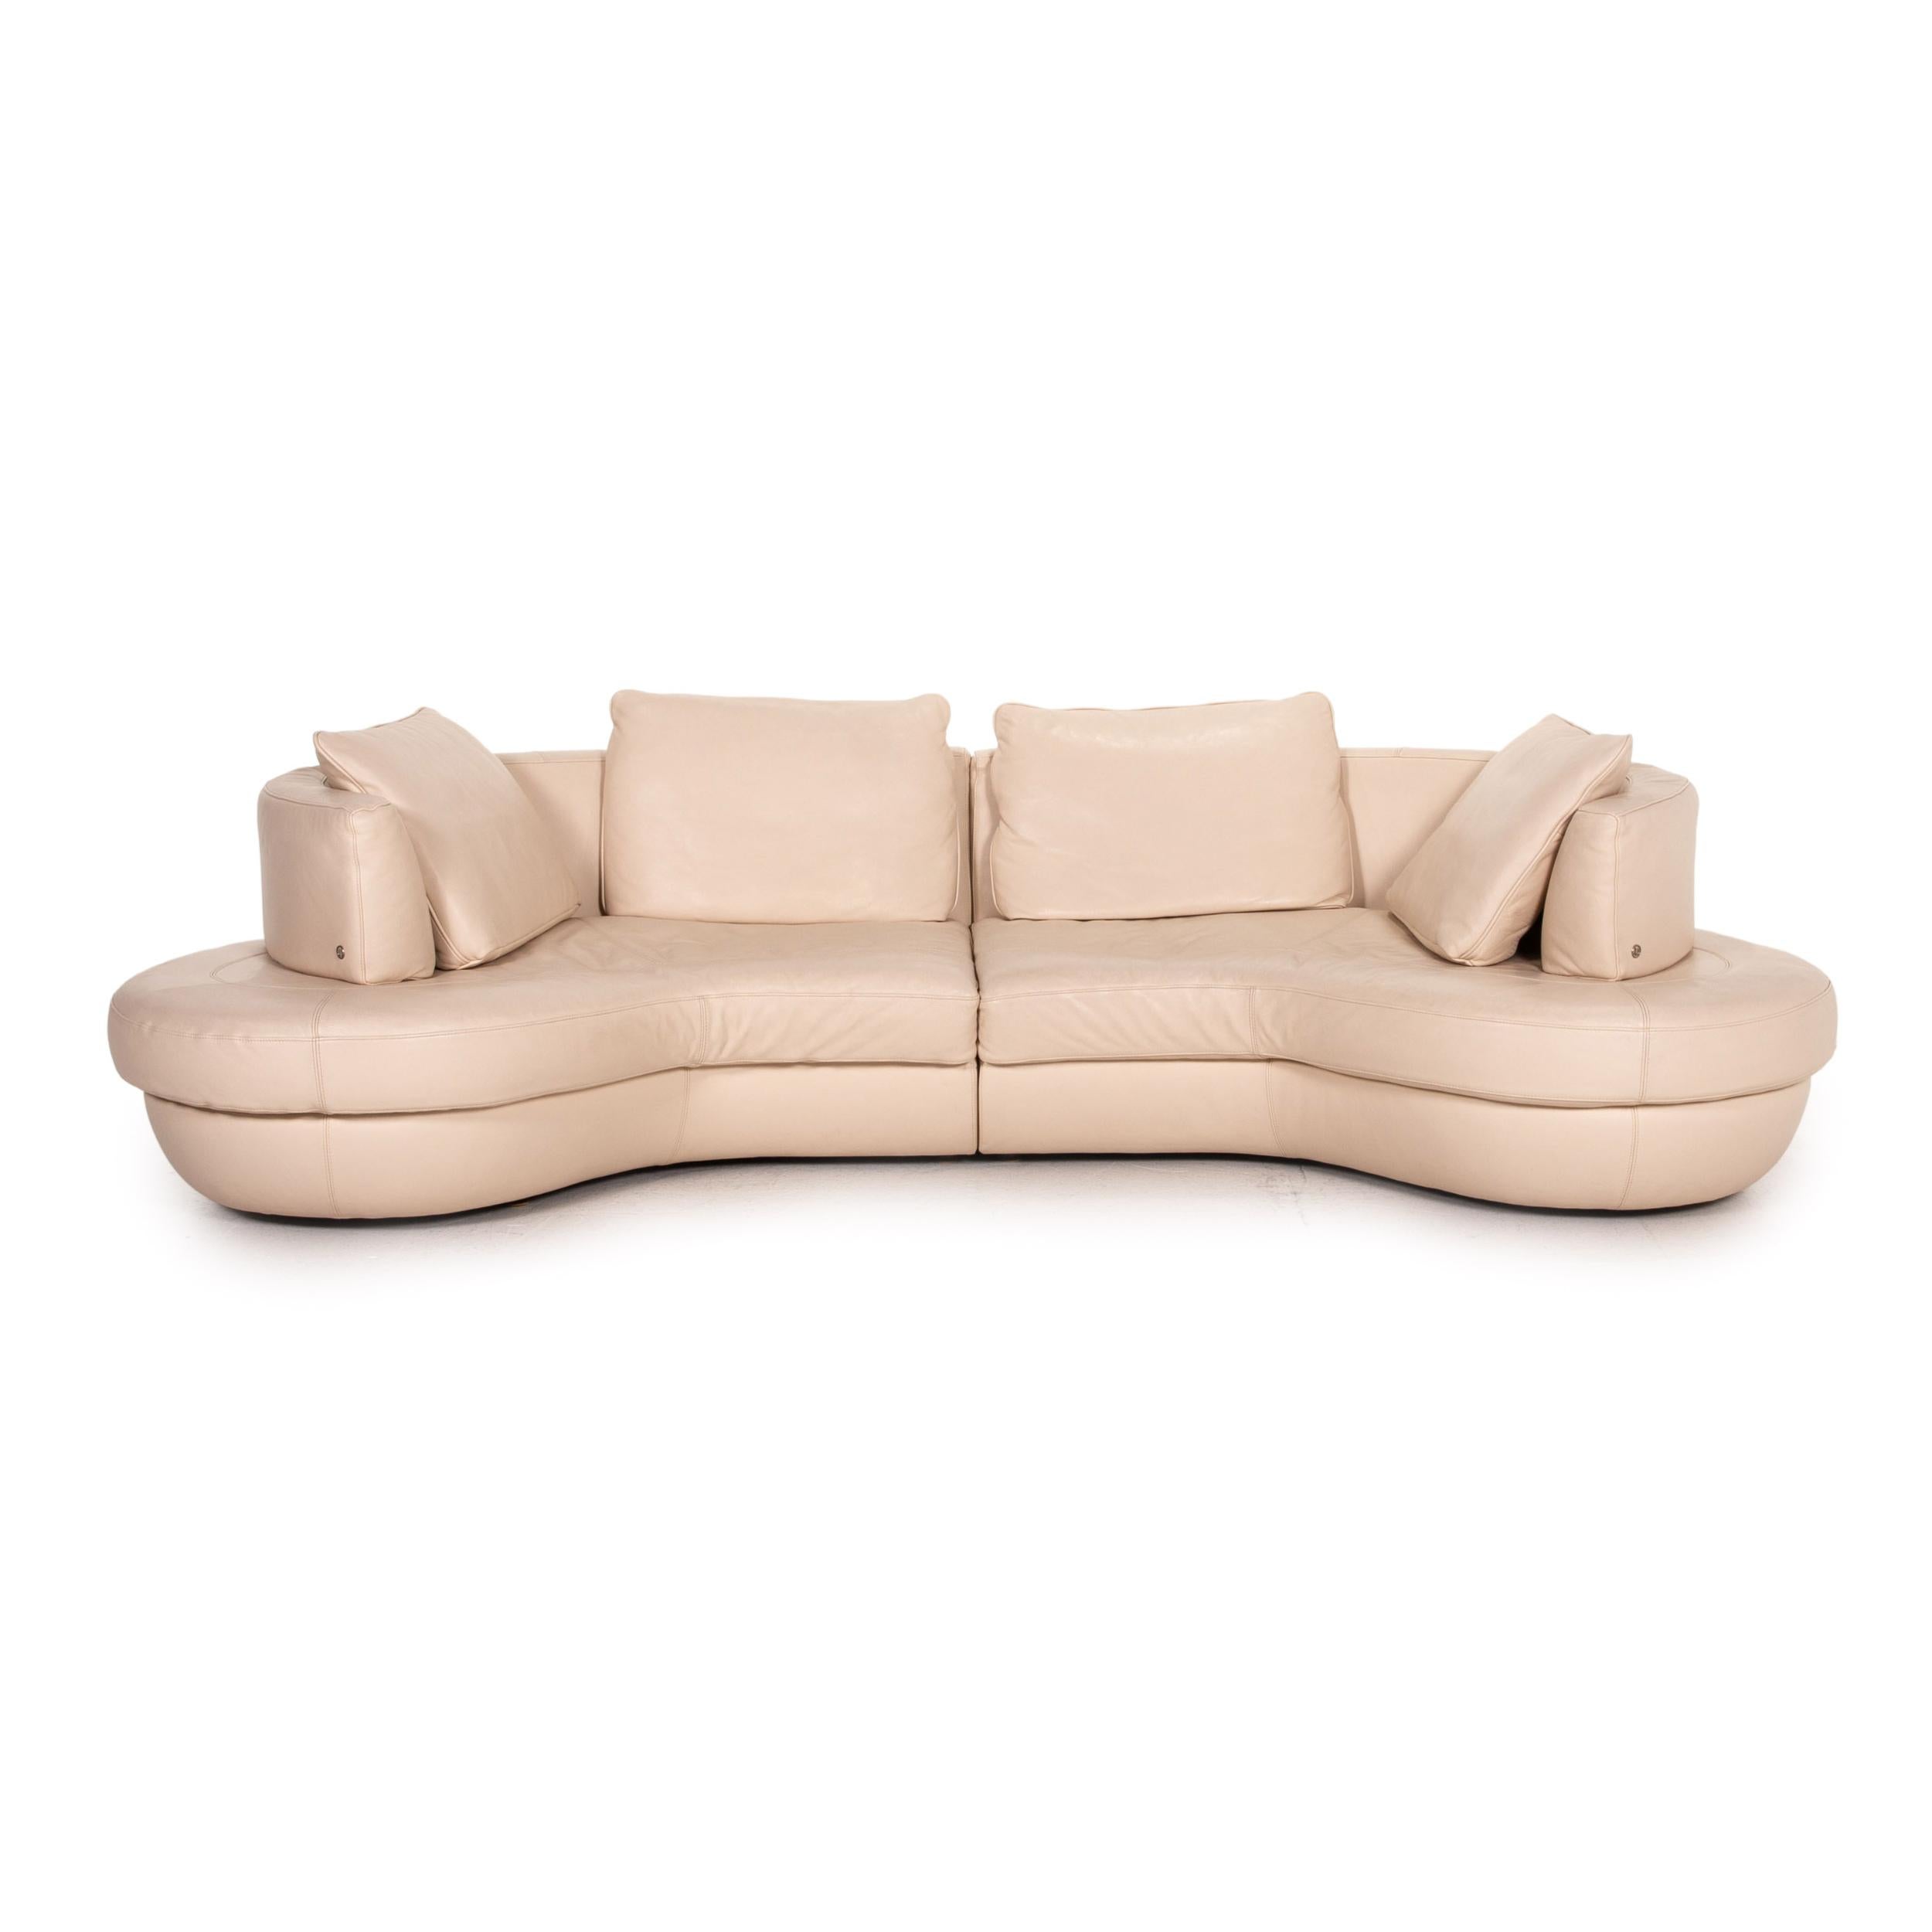 natuzzi curved leather sofa